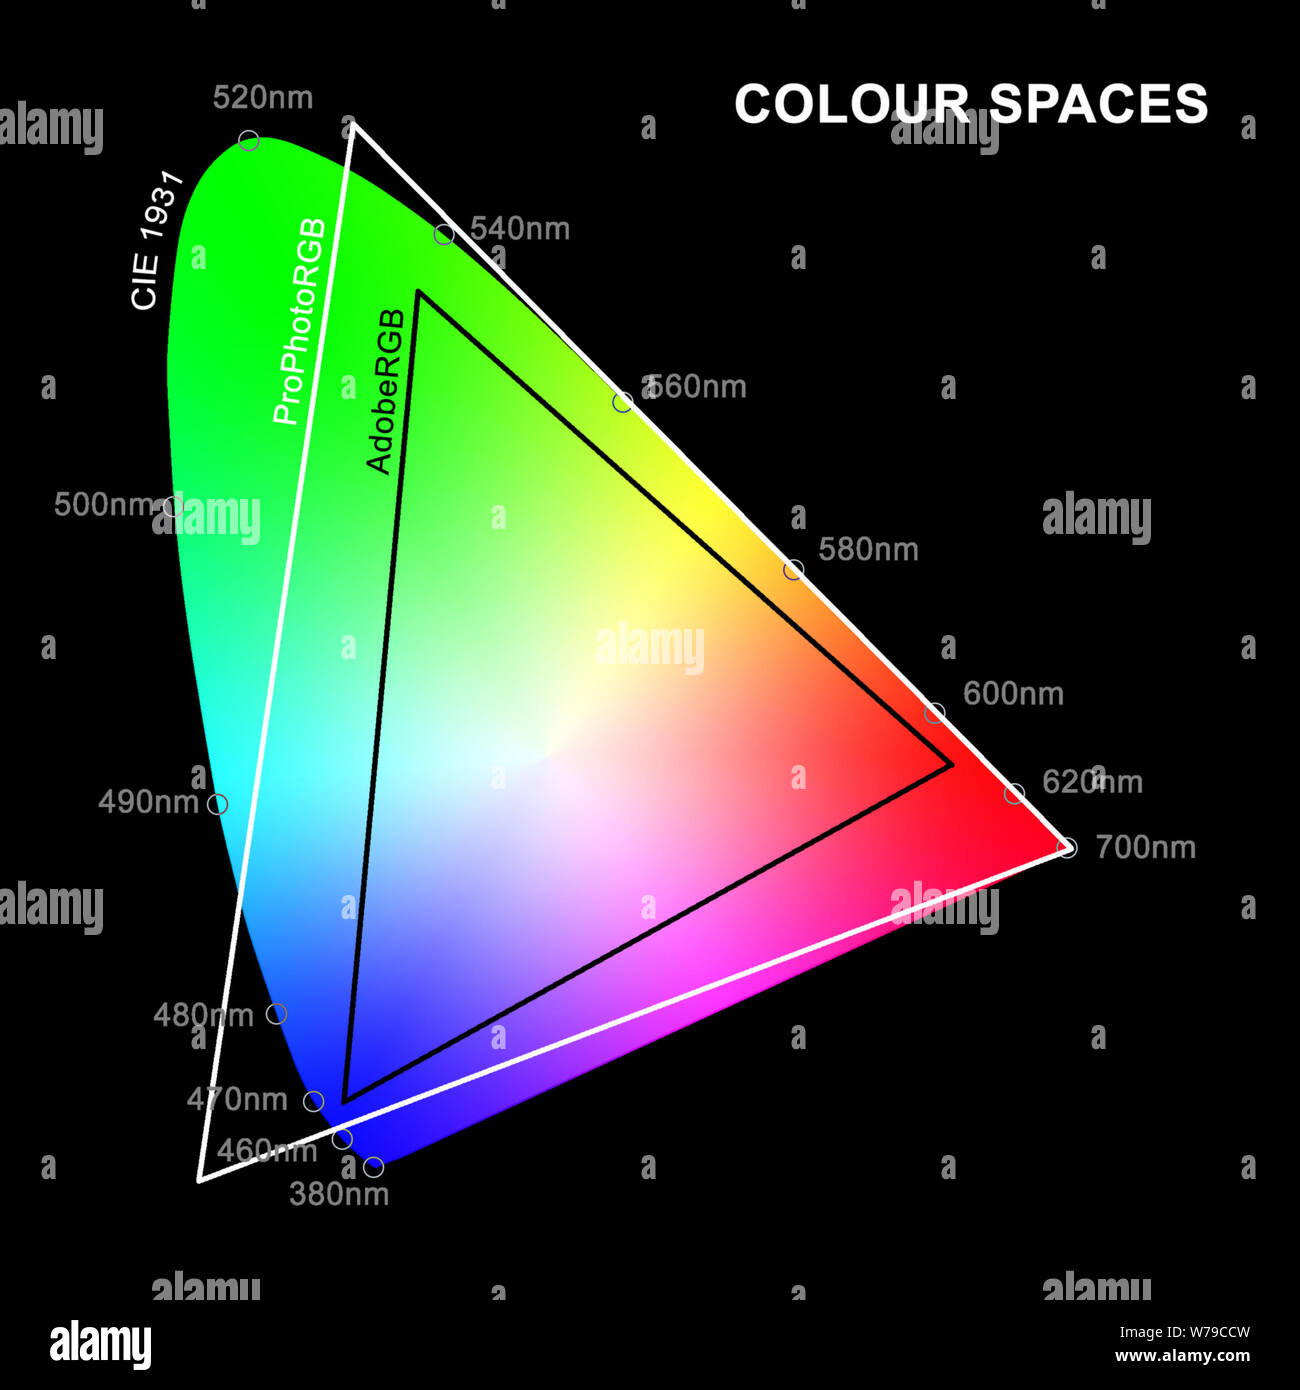 Une illustration d'espaces couleur AdobeRGB et ProPhotoRGB superposées sur diagramme chromatique CIE 1931 de la perception des couleurs Banque D'Images